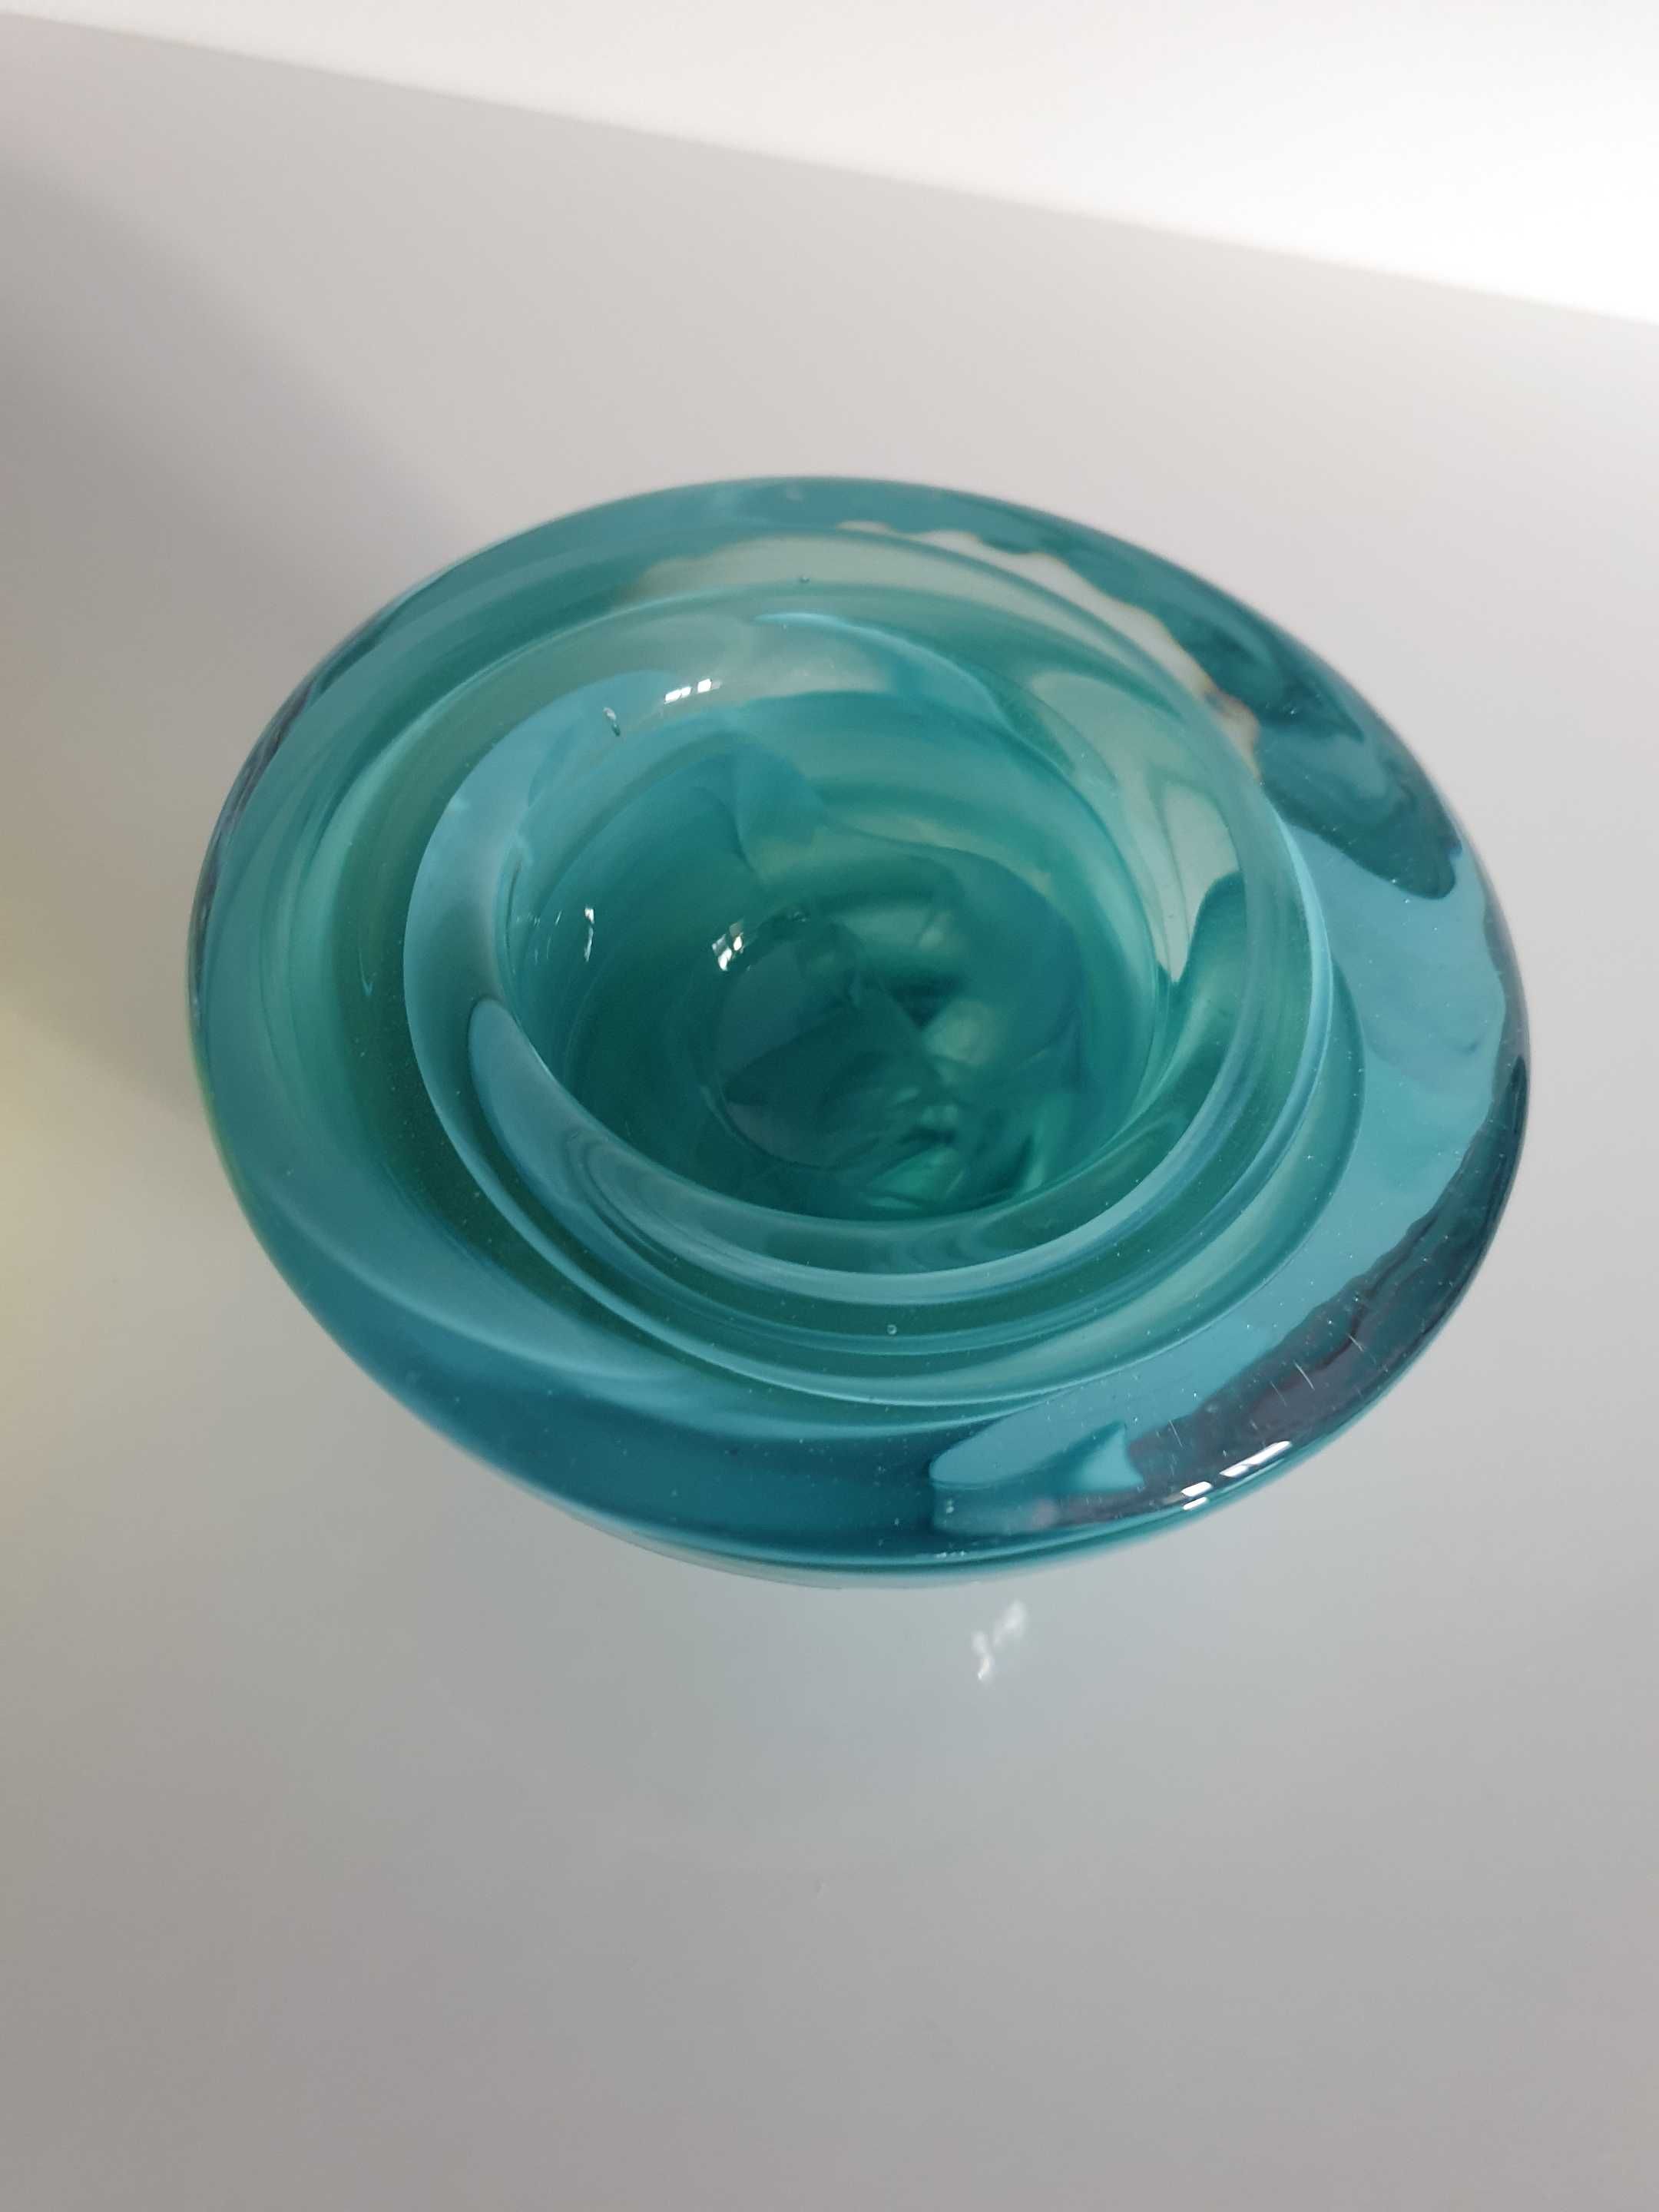 Kosta Boda sweden świecznik 2 szt art glass szkło kolorowe